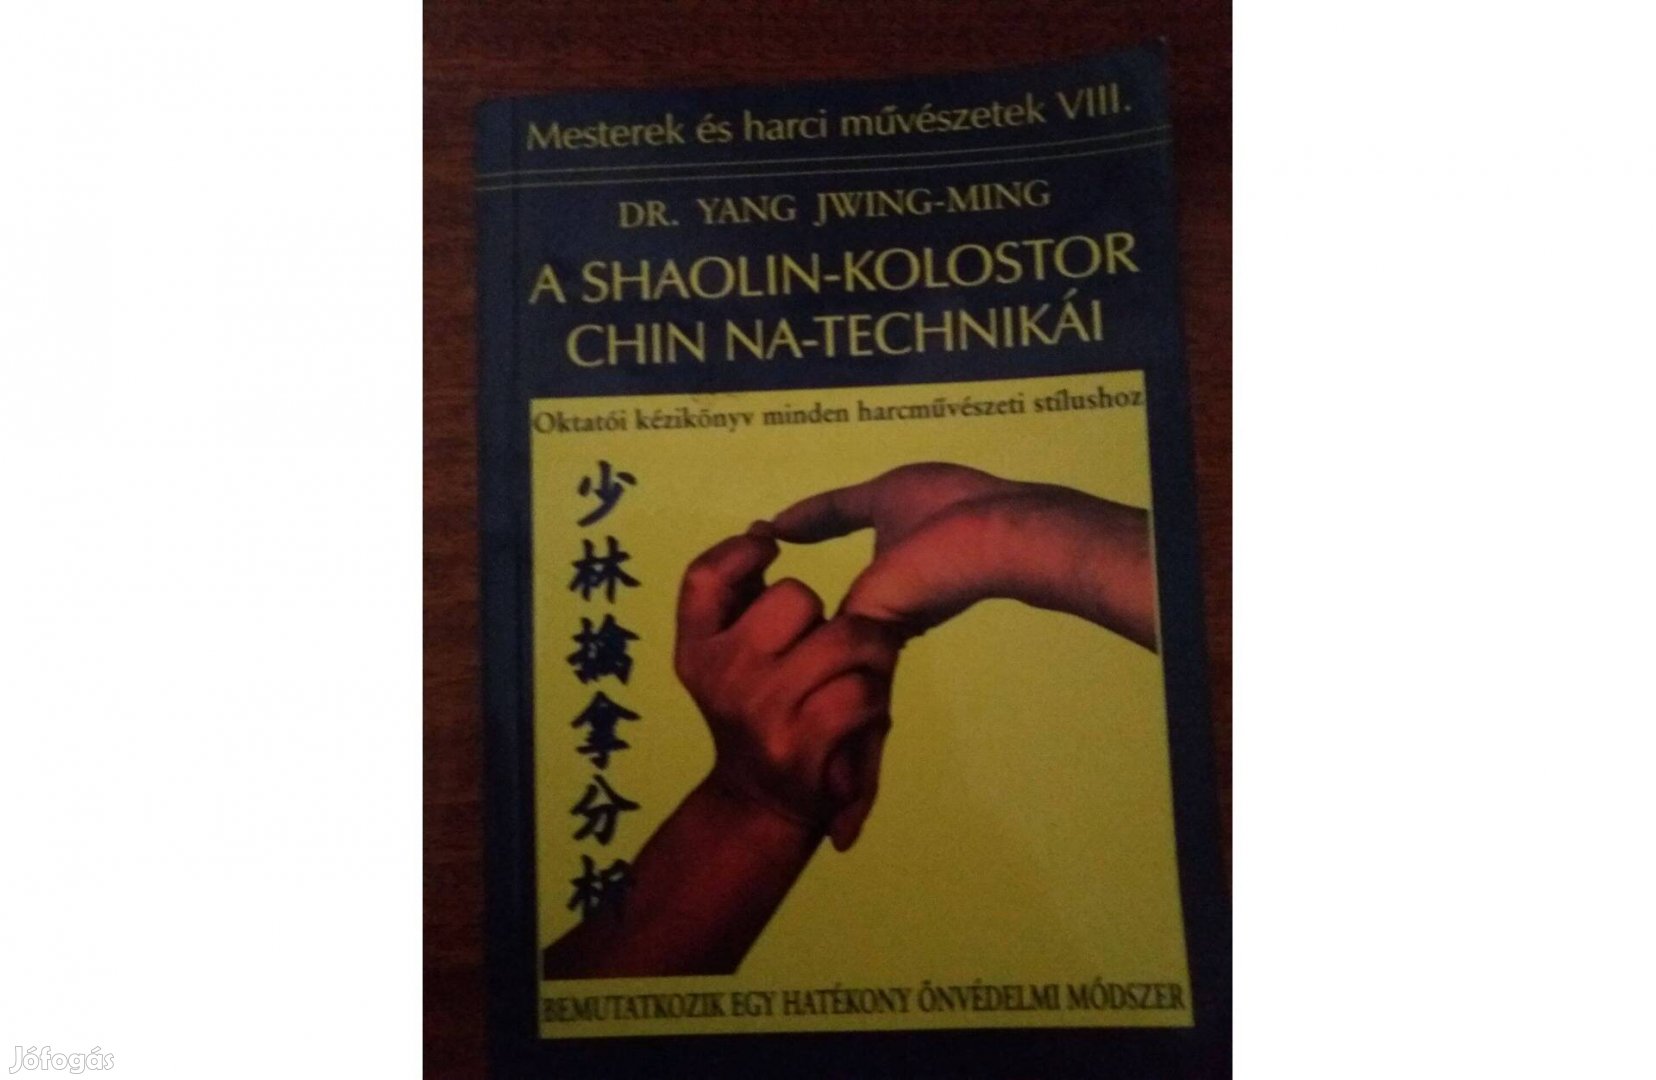 Shaolin kolostor Chin technikái önvédelmi harcművészet könyv